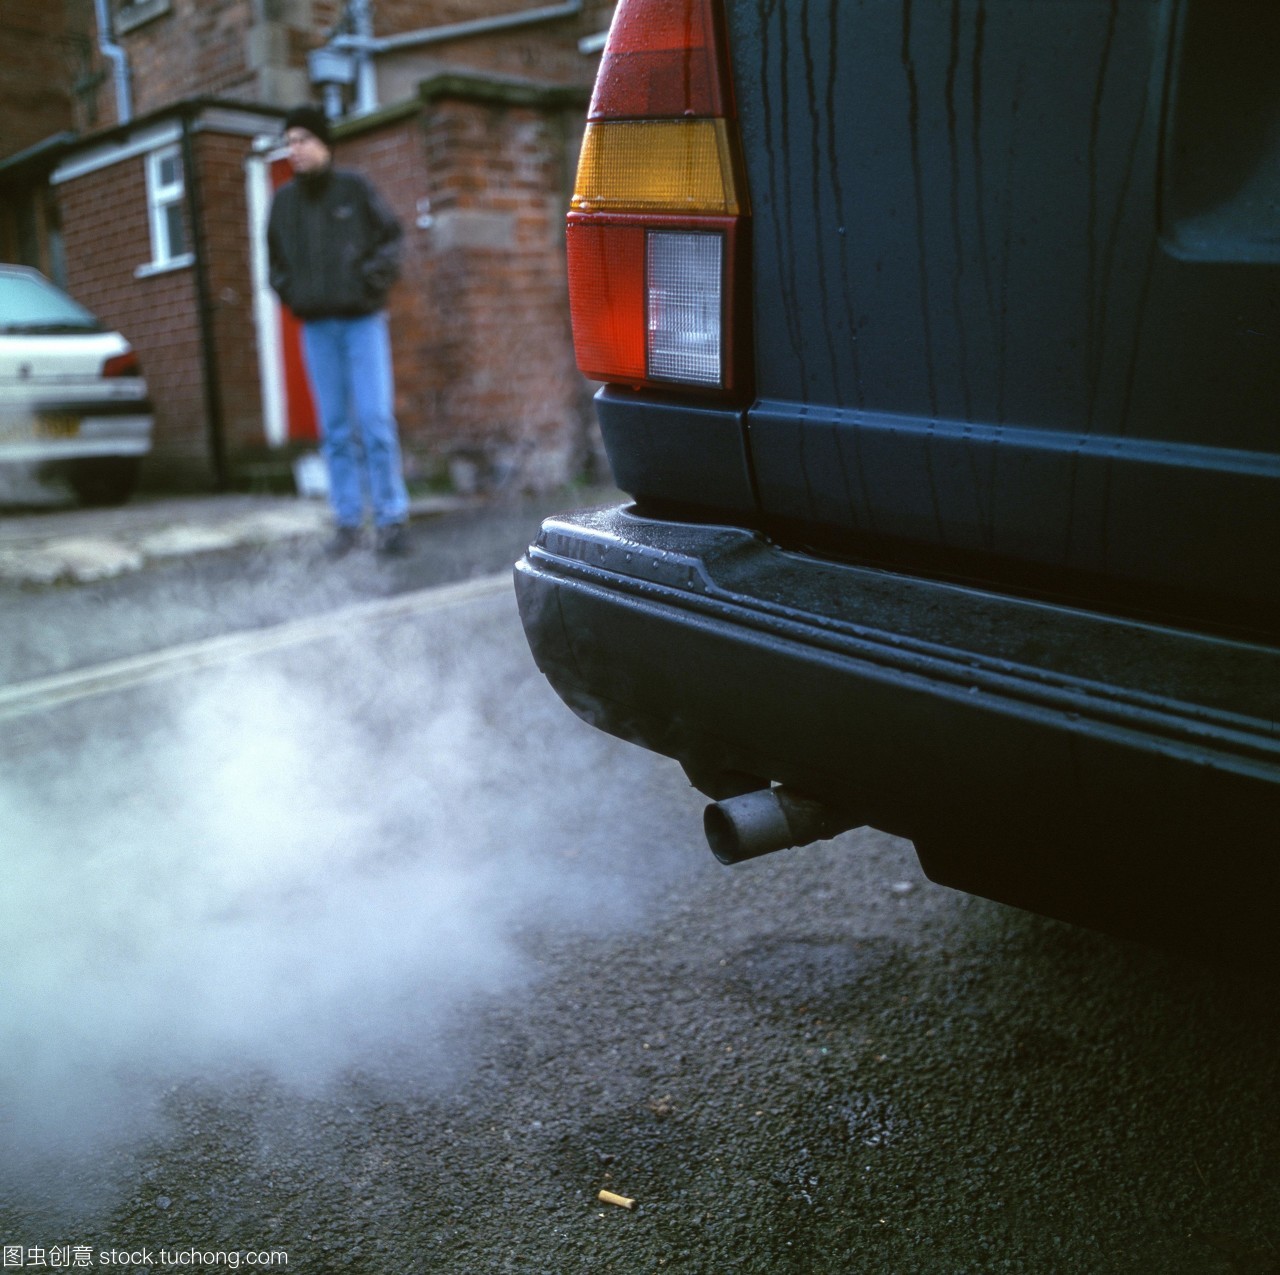 交通污染。汽车废气在市区与行人在人行道上。根据燃料的类型和发动机的设计,废气可以包含有毒气体,如一氧化碳,臭氧和氮氧化物。煤烟颗粒和未燃烧的碳氢化合物也会产生。交通废气是城市中主要的空气污染物。严重的空气污染与肺病的发病率有关。摄于英格兰西米德兰兹郡。